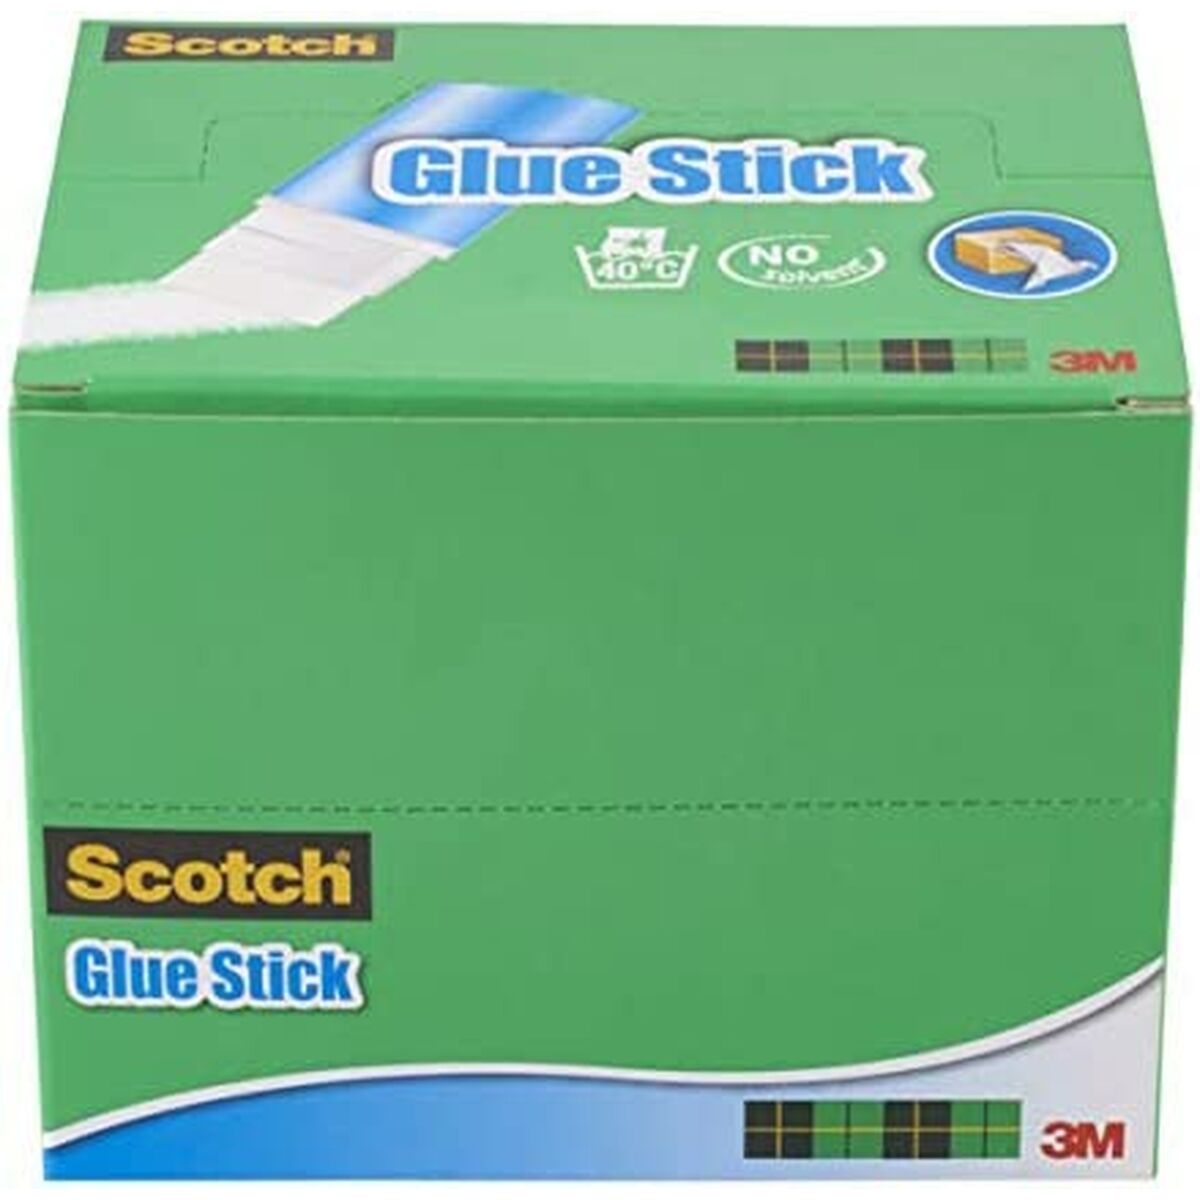 Glue stick Scotch Classic Line 21 g